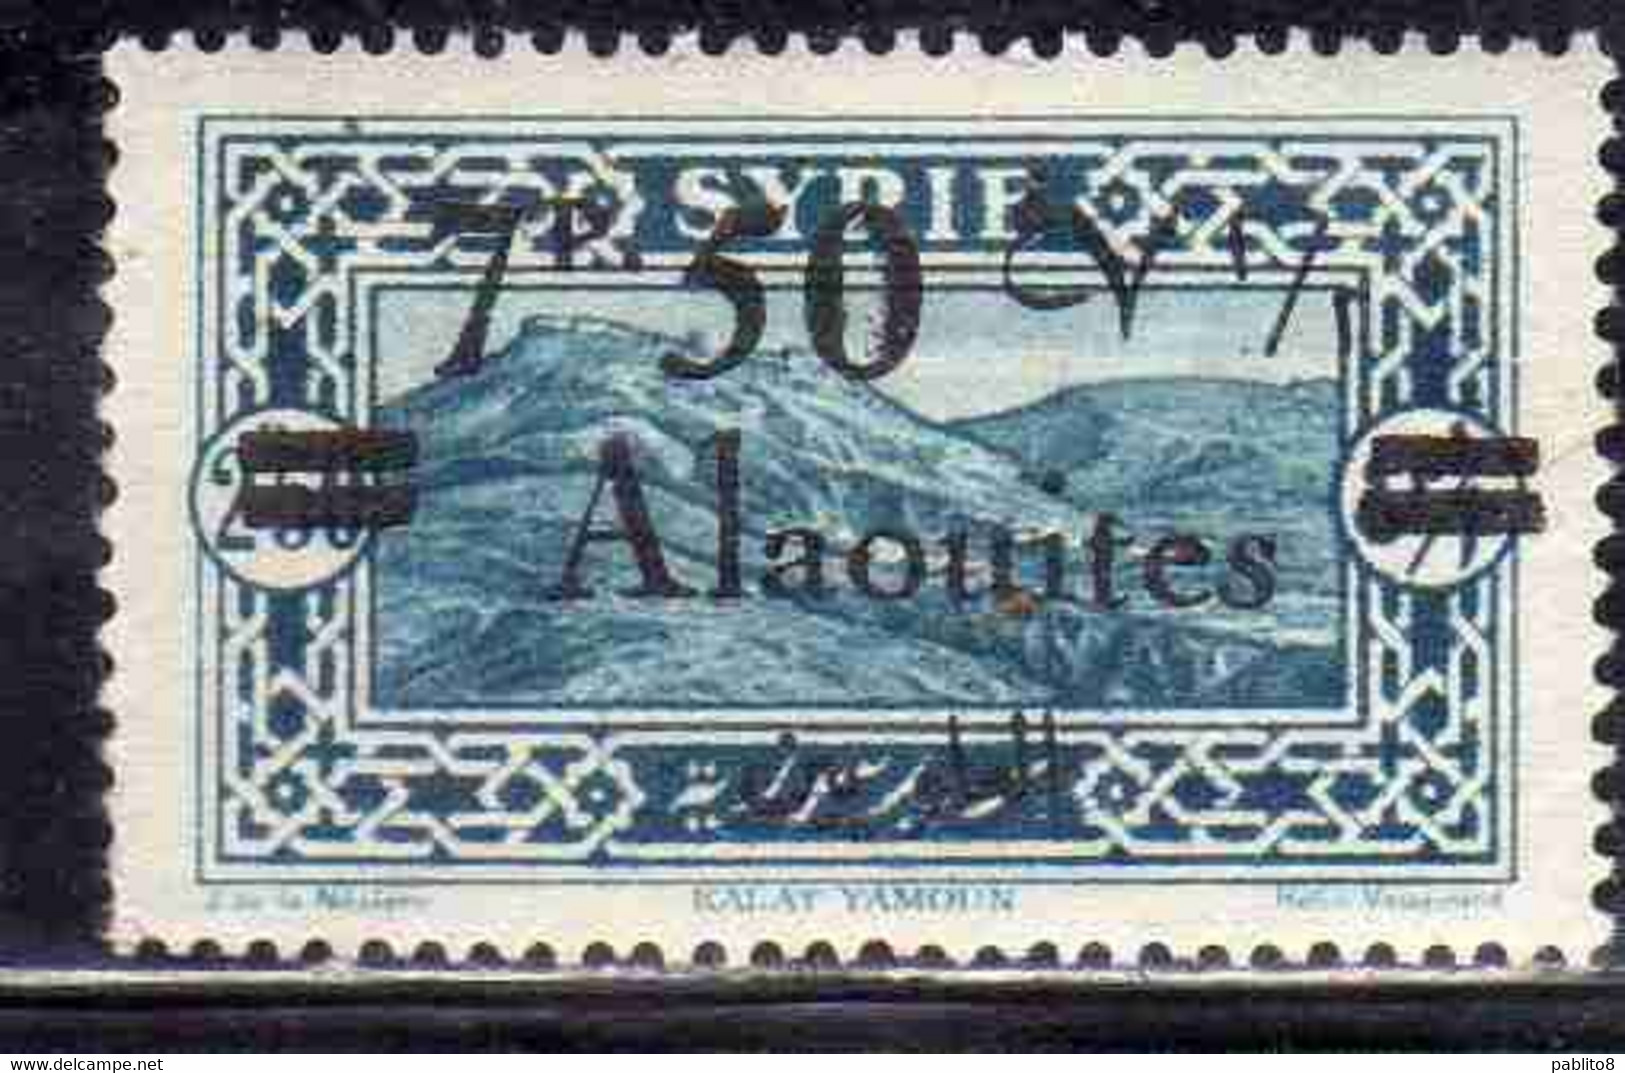 ALAOUITES SYRIA SIRIA ALAQUITES 1926 VIEW OF KALAT YAMOUN SURCHARGED 7.50p On 2.50p USED USATO OBLITERE' - Usados